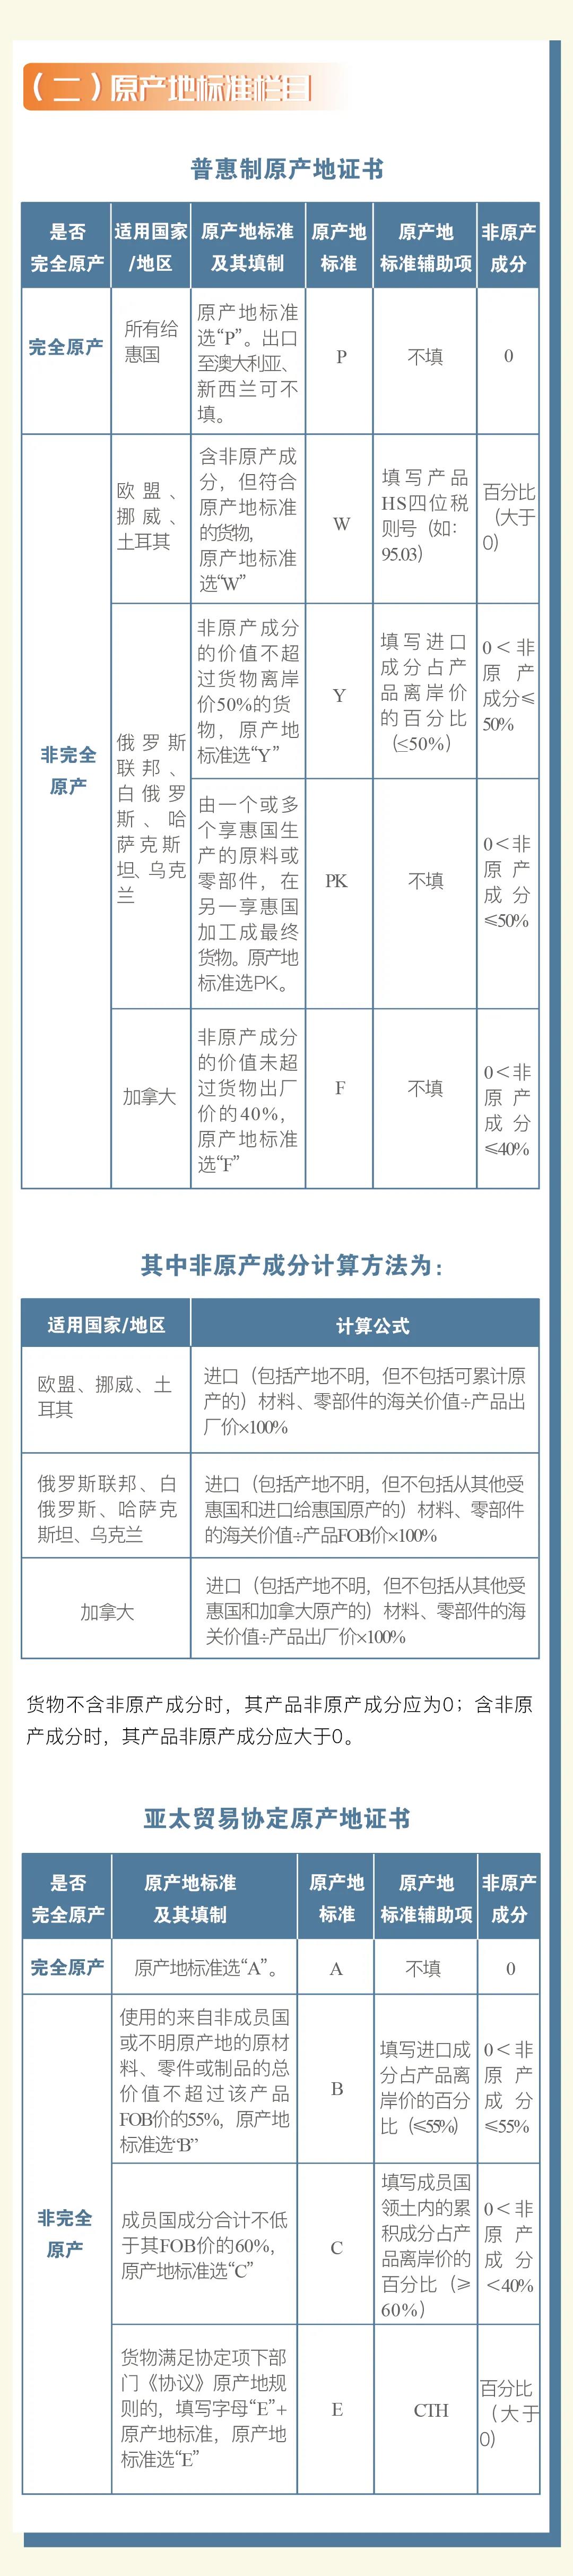 普惠制、非优惠、亚太贸易协定原产地证书申报指南 